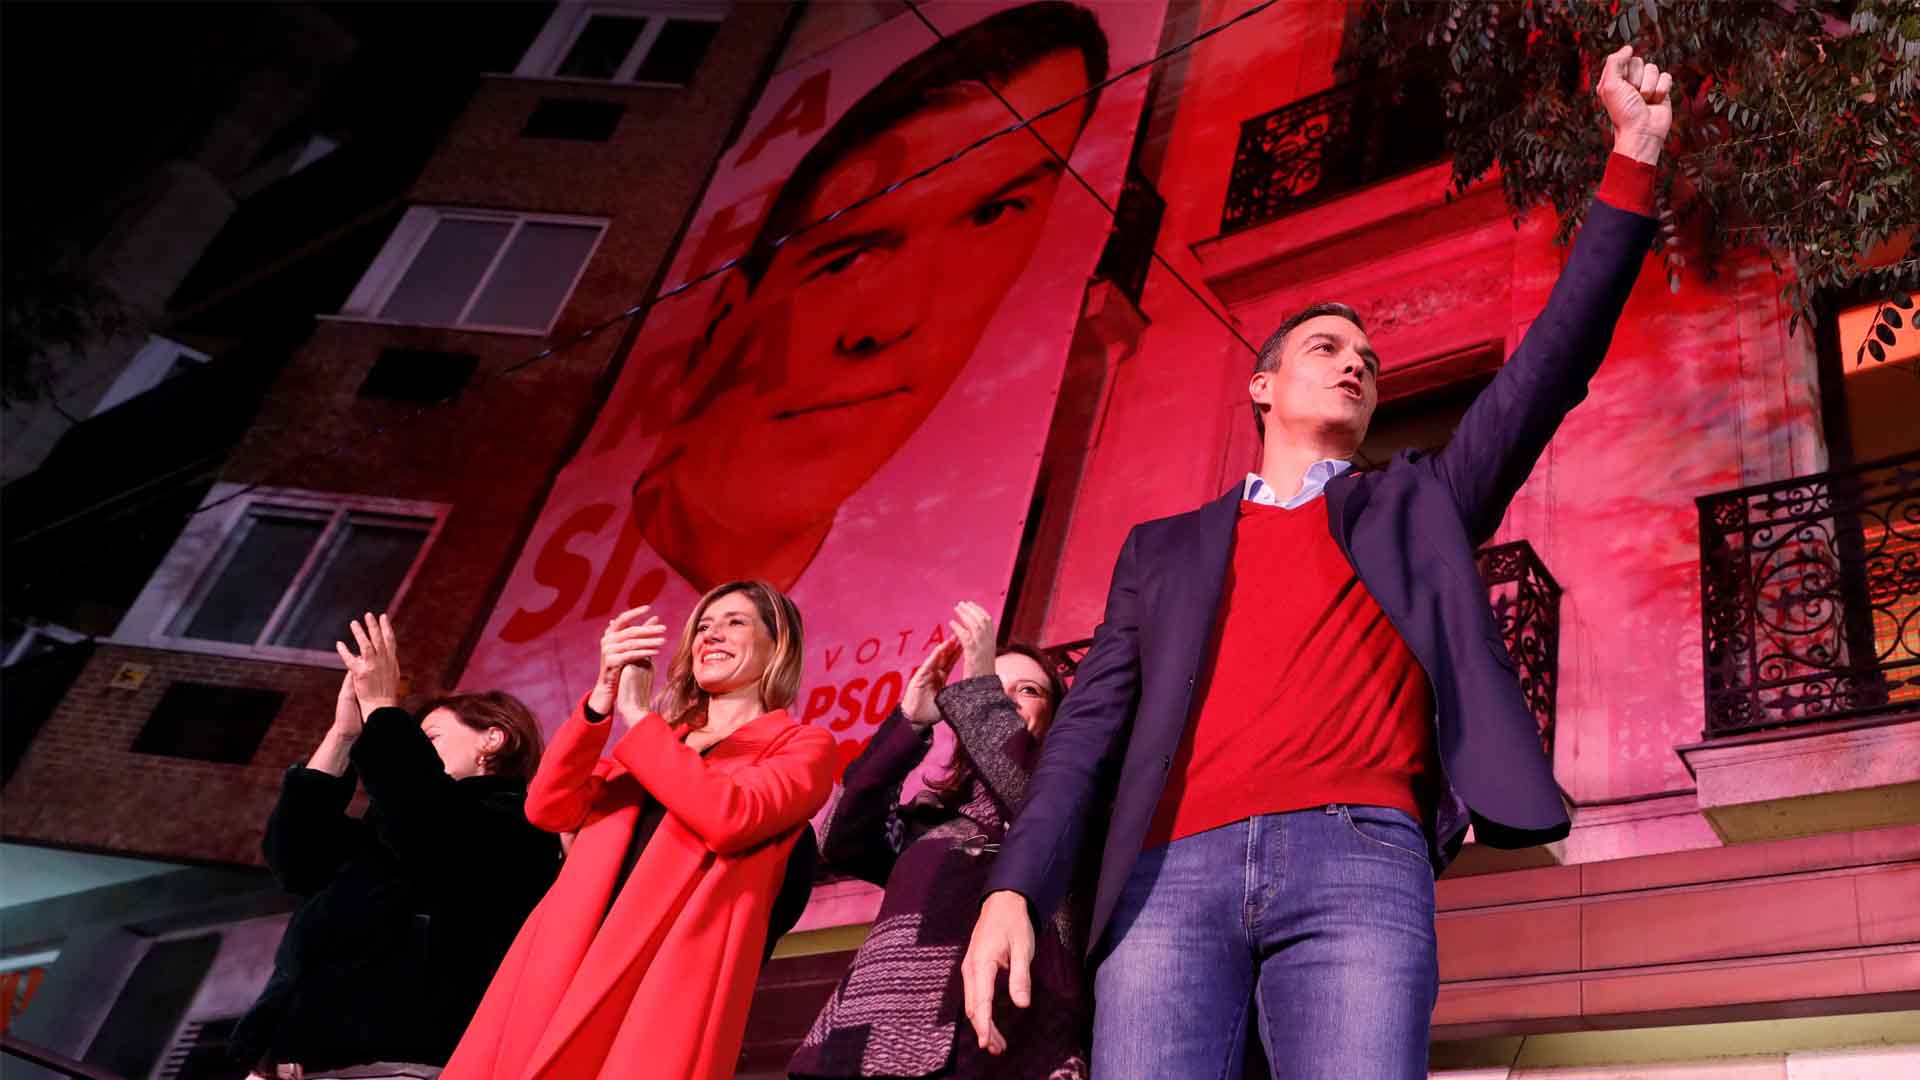 El PSOE asume la responsabilidad de formar Gobierno "lo antes posible" y el PP pide la salida de Sánchez